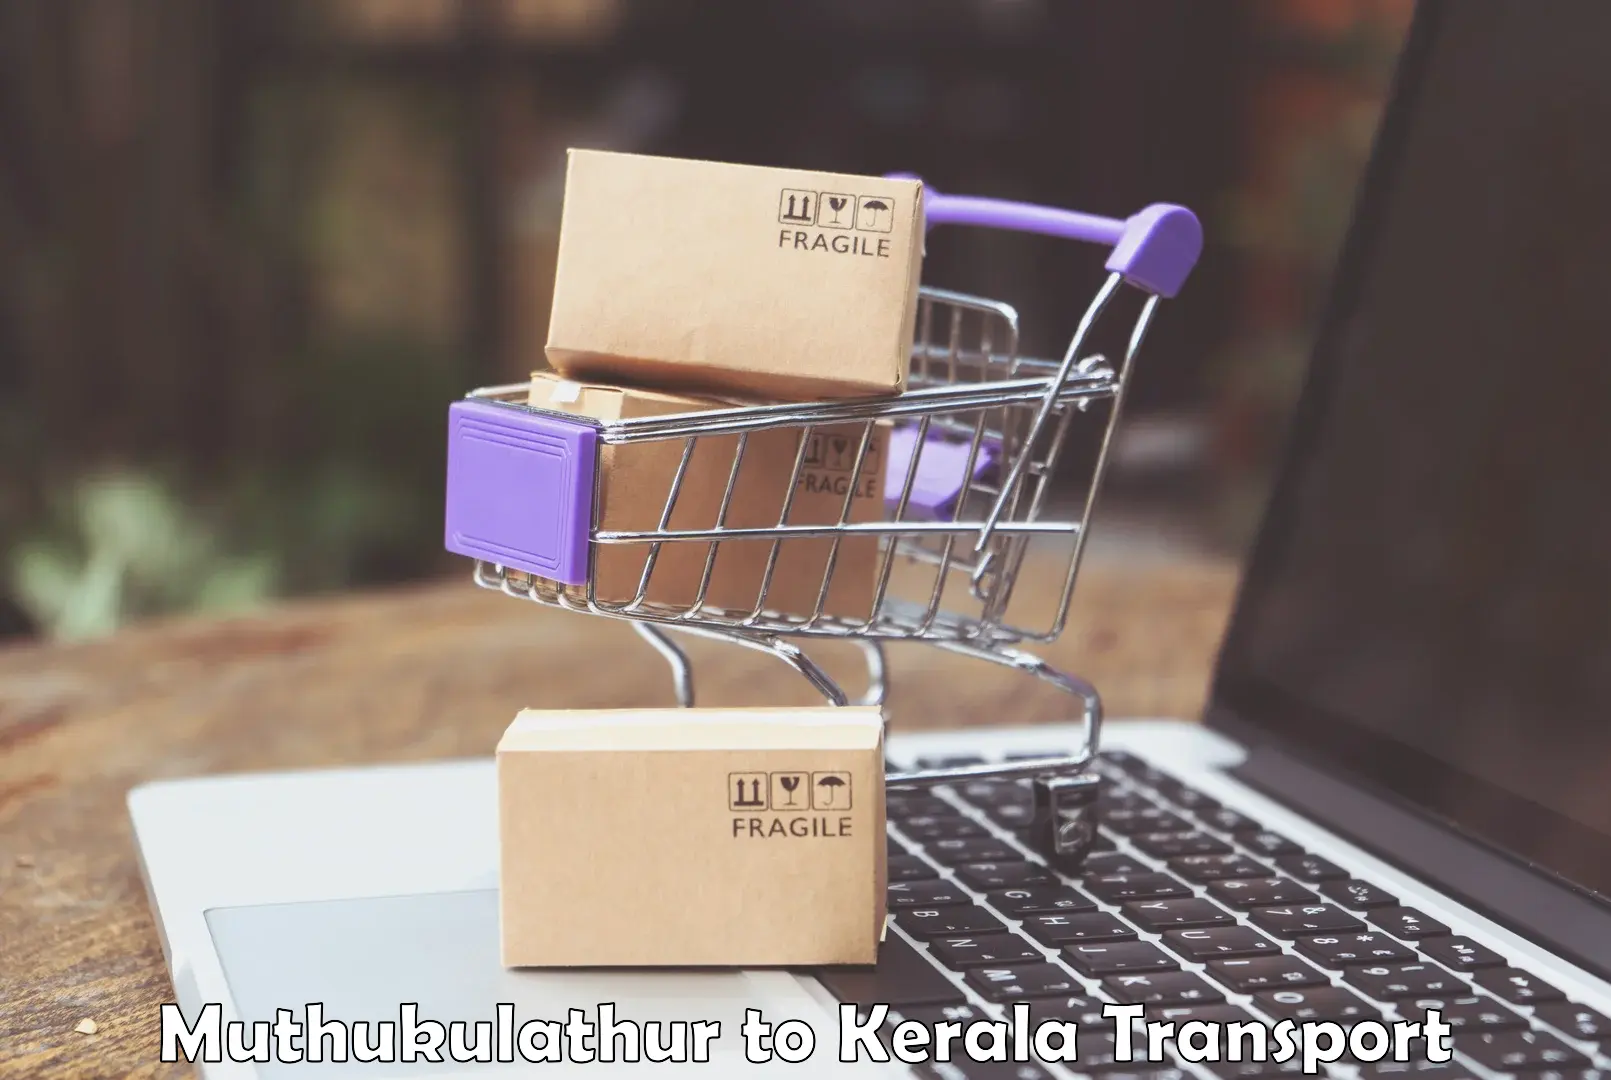 Shipping partner Muthukulathur to Kerala